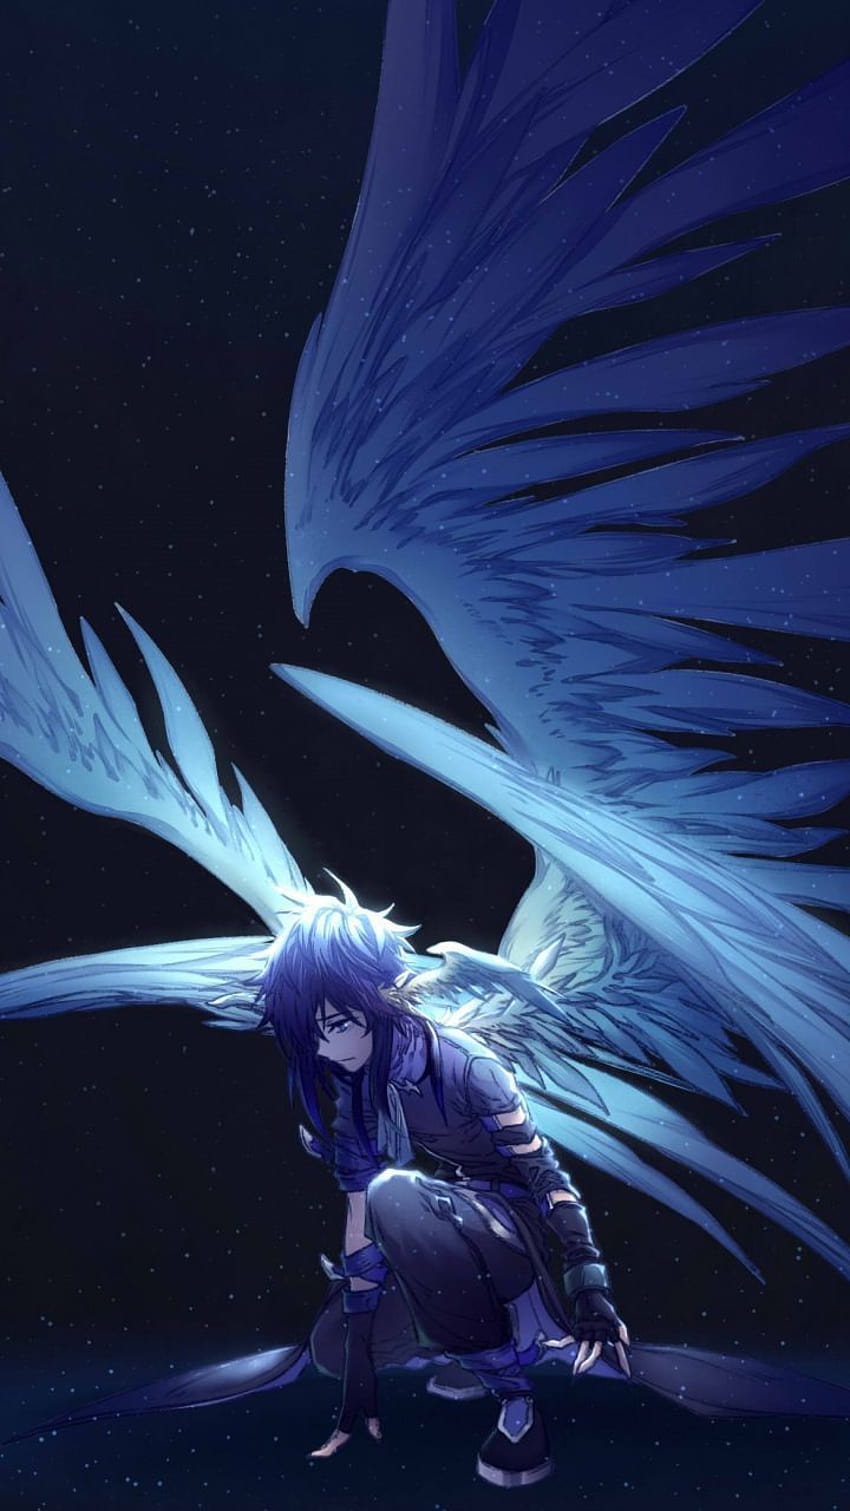 Anime Angel Girl by sharonsezrawr on DeviantArt